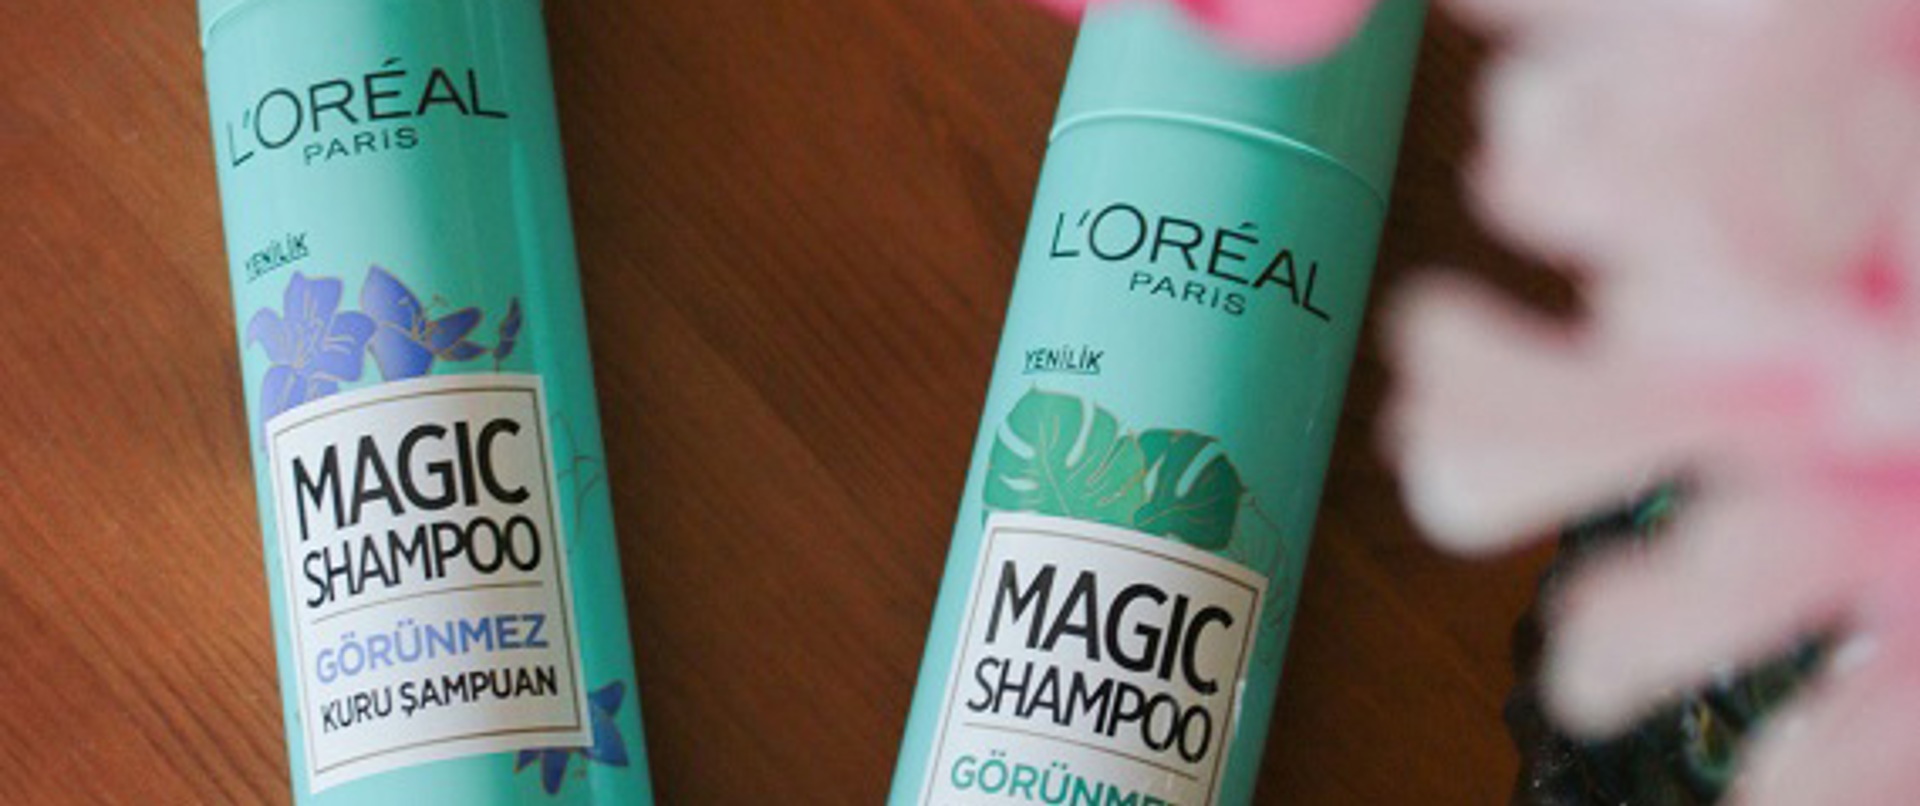 L’Oréal Paris Magic Shampoo Görünmez Kuru Şampuan'ı Denedik!